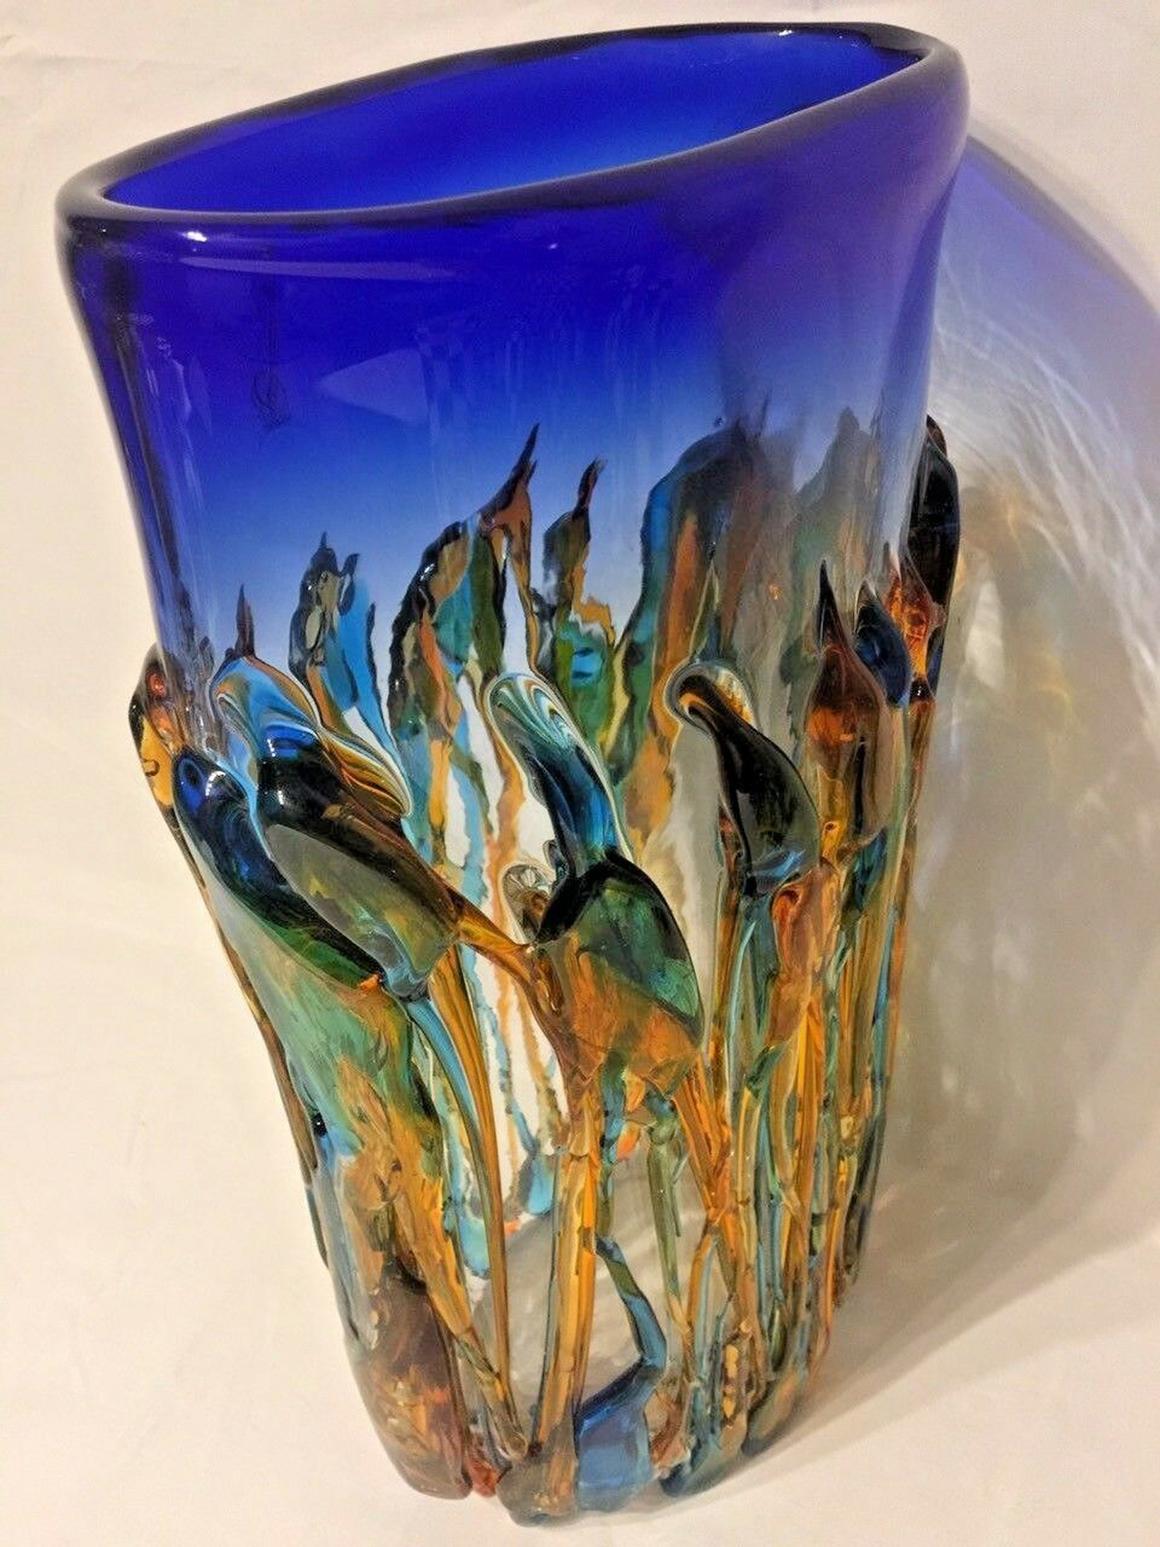 Magnifique grand vase en verre d'art Murano Design/One Vetro Artistico avec des couleurs frappantes présentant des fils lumineux de verre bleu, vert et ambre, signé et numéroté, mesurant environ 14,38 pouces de haut x 8,5 pouces de large. Sculpture